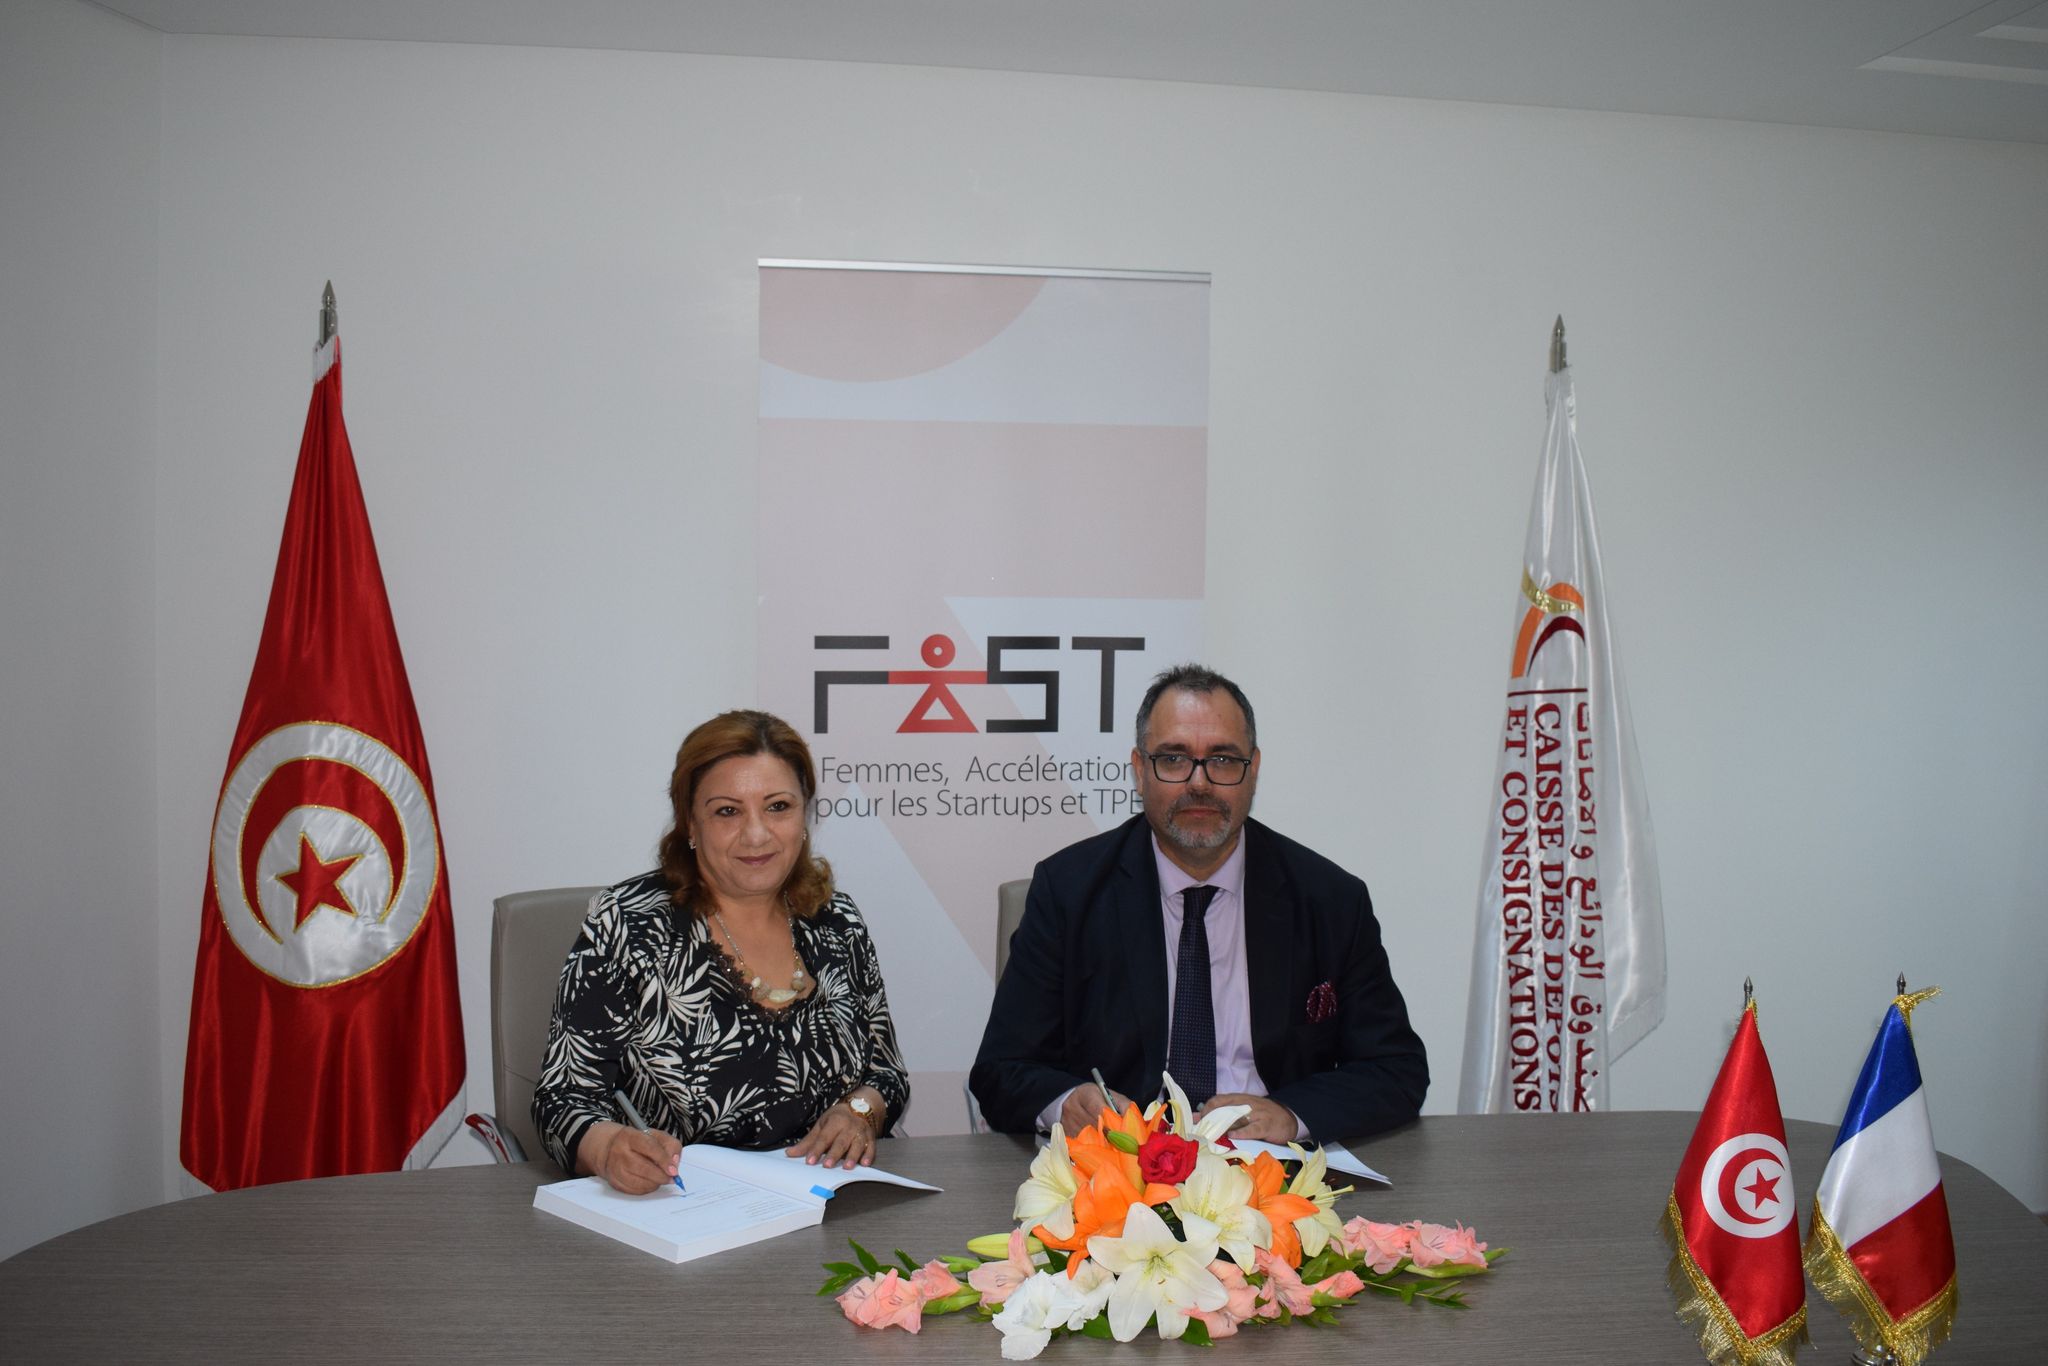 دعم أربعة برامج تسريع لتنمية الشركات الناشئة التونسية  كجزء من برنامج FAST